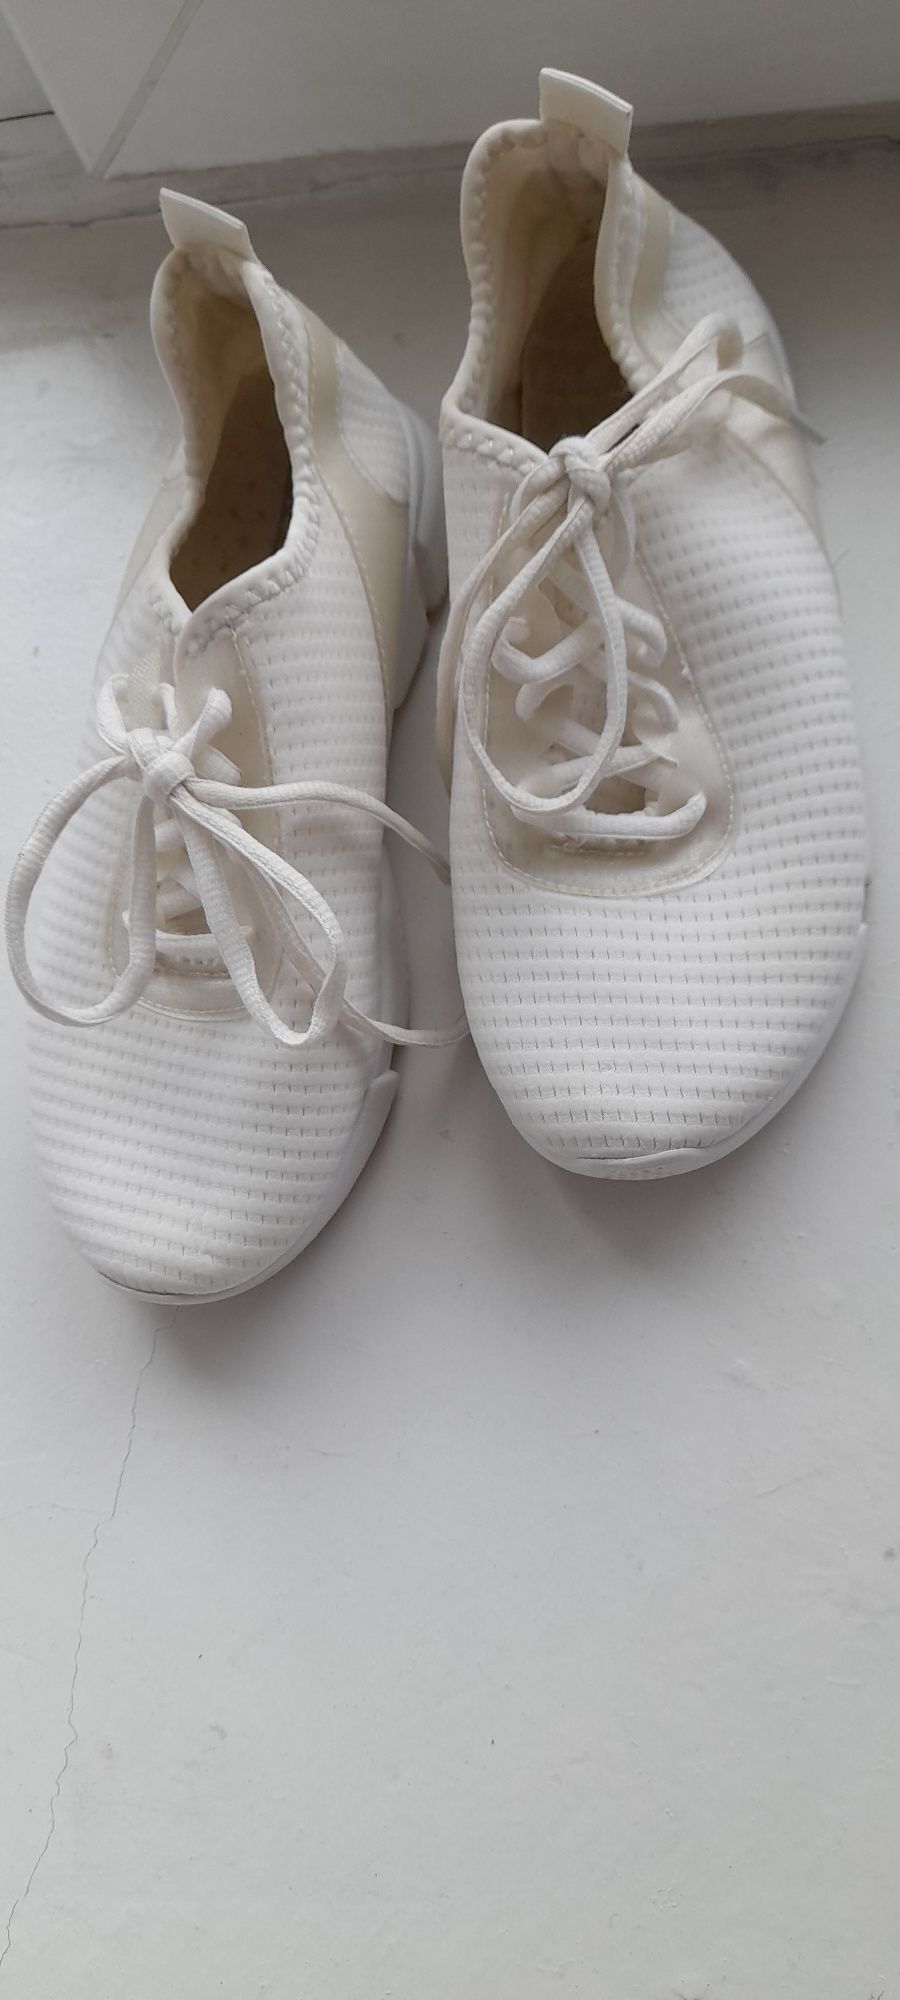 Жіночі білі кросівки